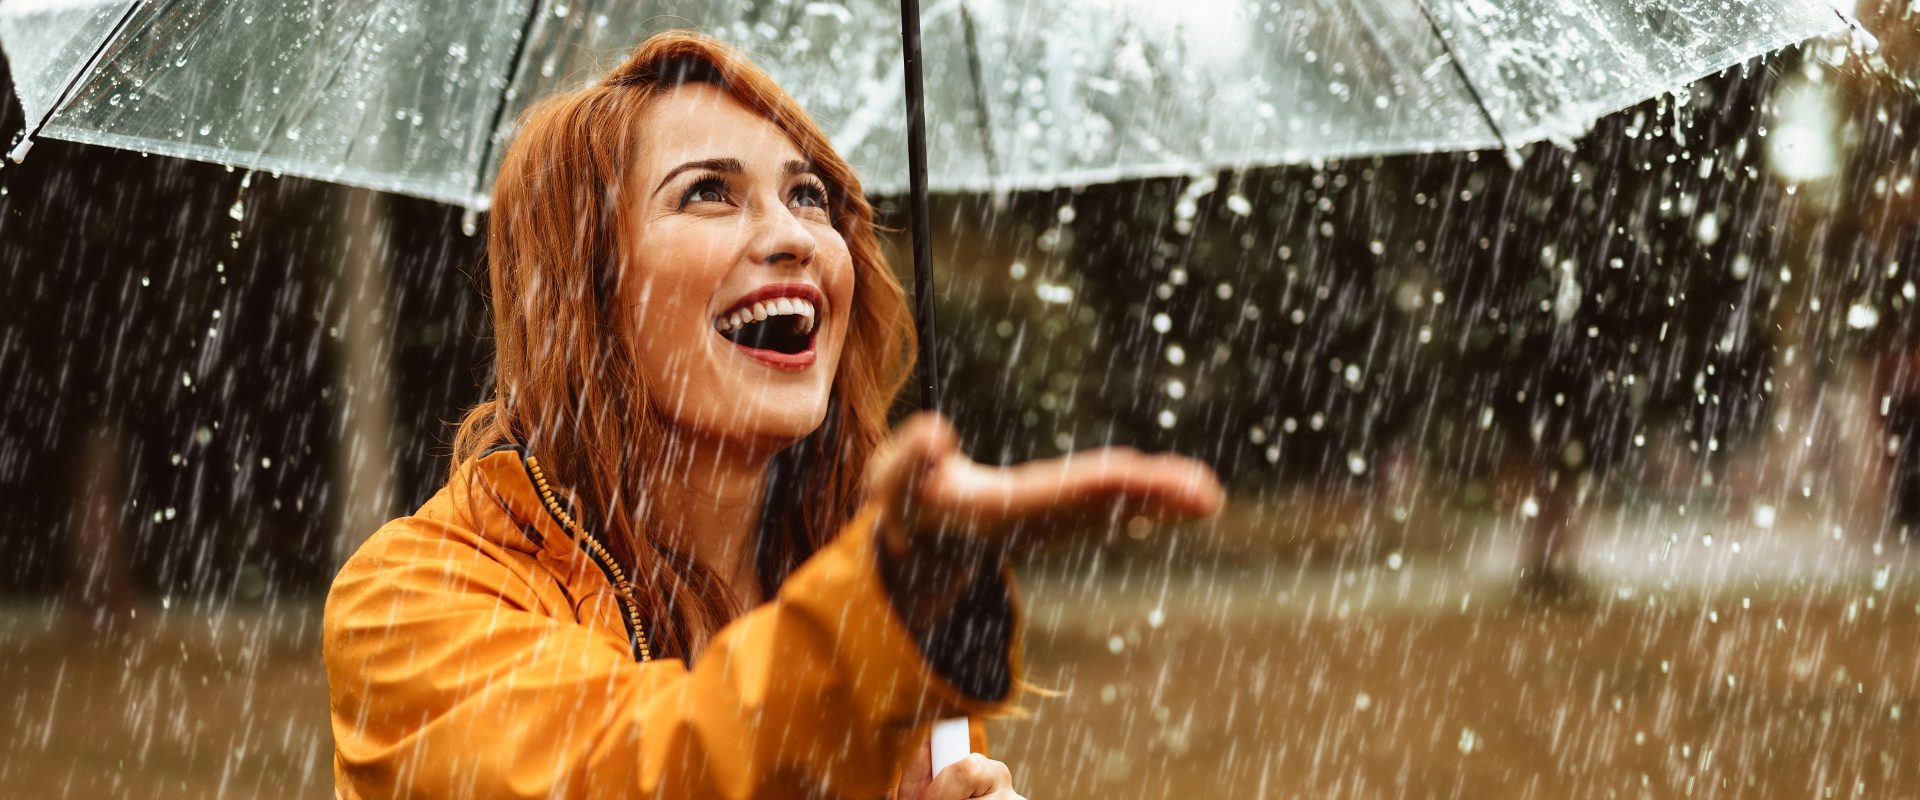 Czynniki obniżające odporność. Co wpływa na obniżoną odporność? Kobieta w żółtym płaszczyku pod przezroczystym parasolem wystawia rękę na deszcz.